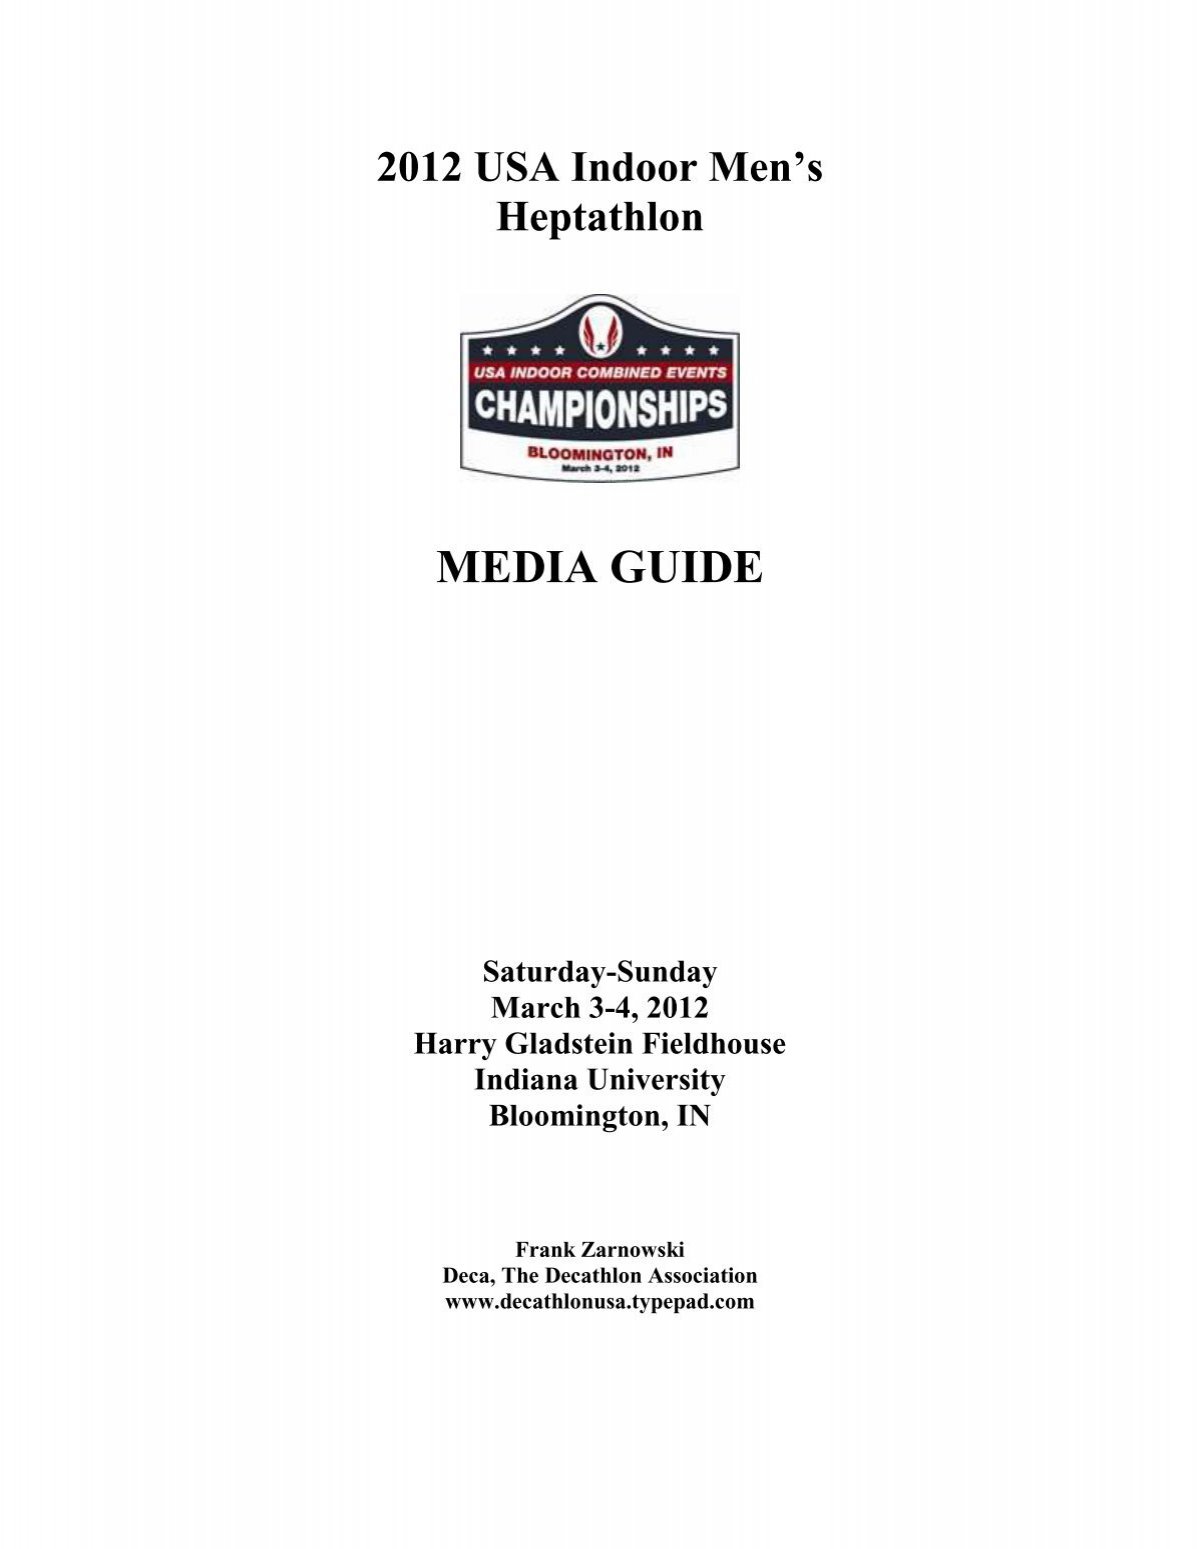 DECATHLON HANDBOOK & MEDIA GUIDE - USA Track & Field